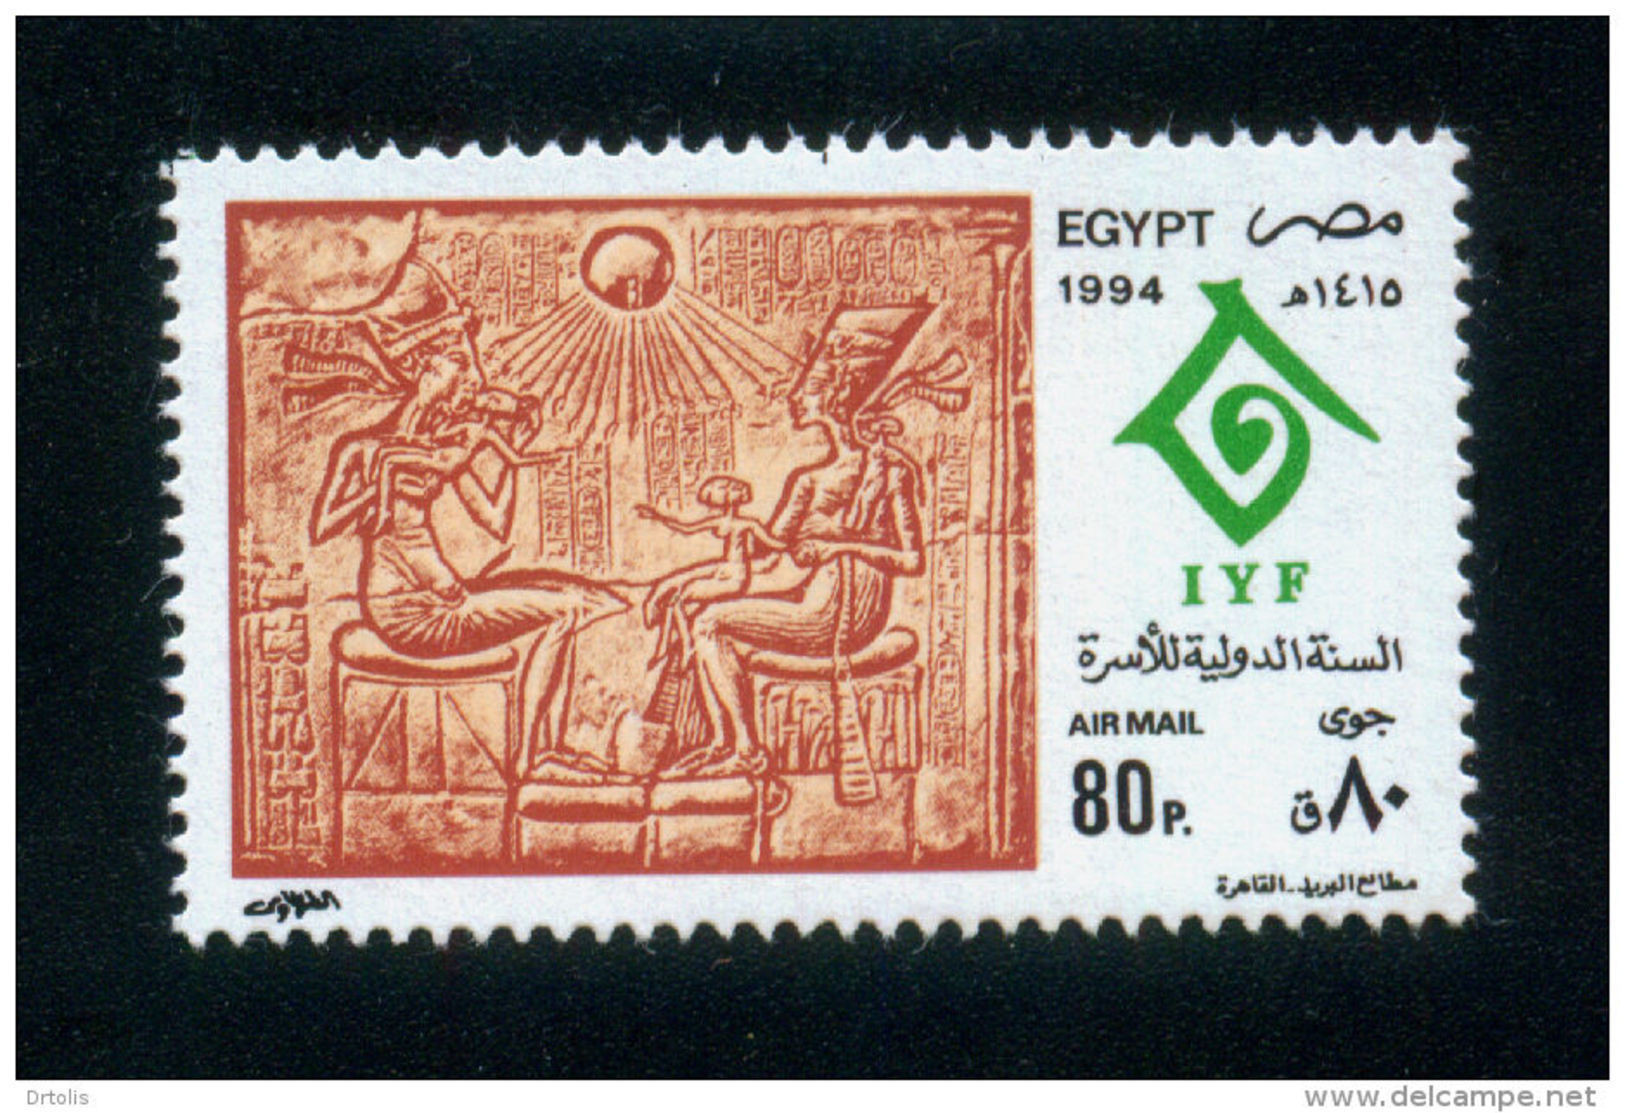 EGYPT / 1994 / UN / UN'S DAY / IYF/ INTL YEAR OF THE FAMILY / EGYPTOLOGY / AKHENATEN ; NEFERTITI & CHILDREN / MNH / VF - Nuovi